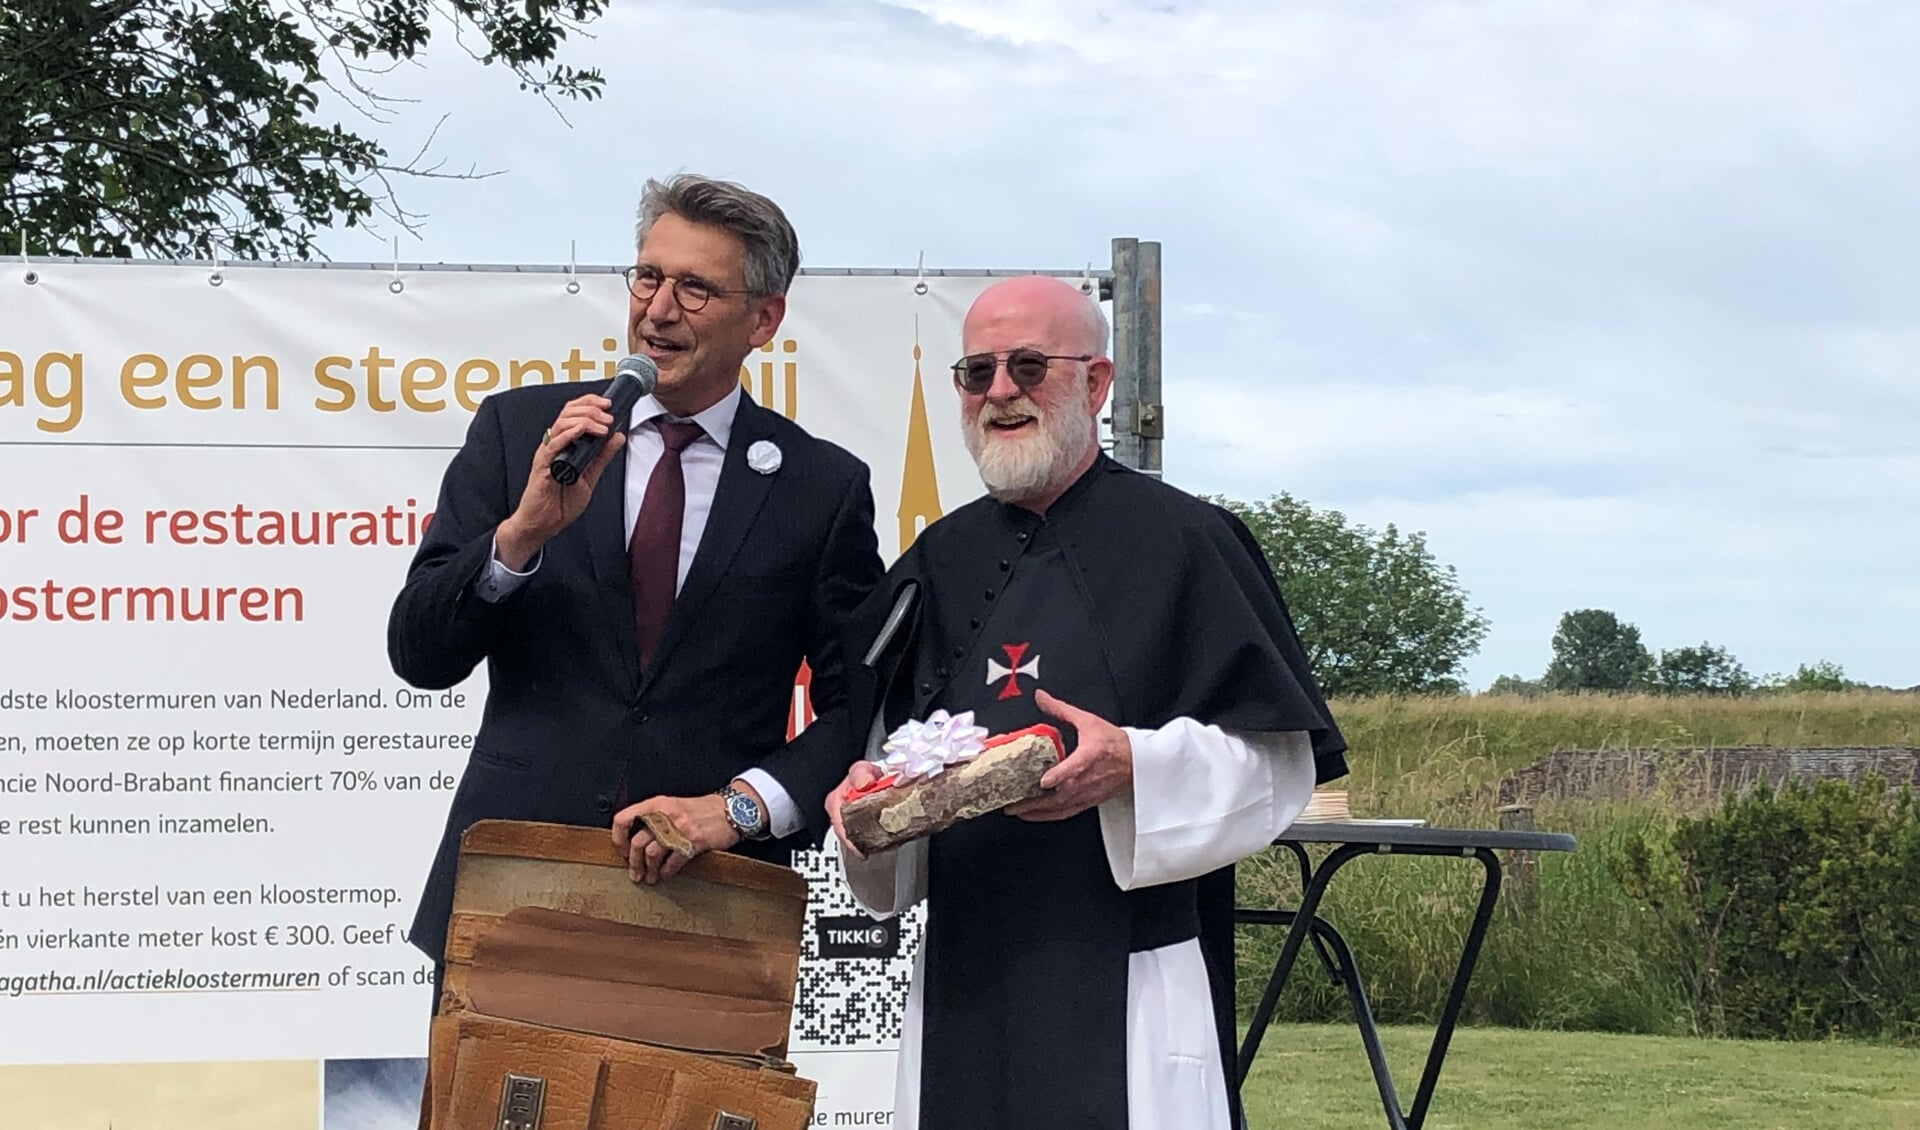 Kruisheer Edgard Claes heeft zojuist een echte kloostmop gekregen van waarnemend burgemeester Wim Hillenaar. De fondsenwerving voor de restauratie van de kloostermuren in Sint Agatha, is officleel afgetrapt.